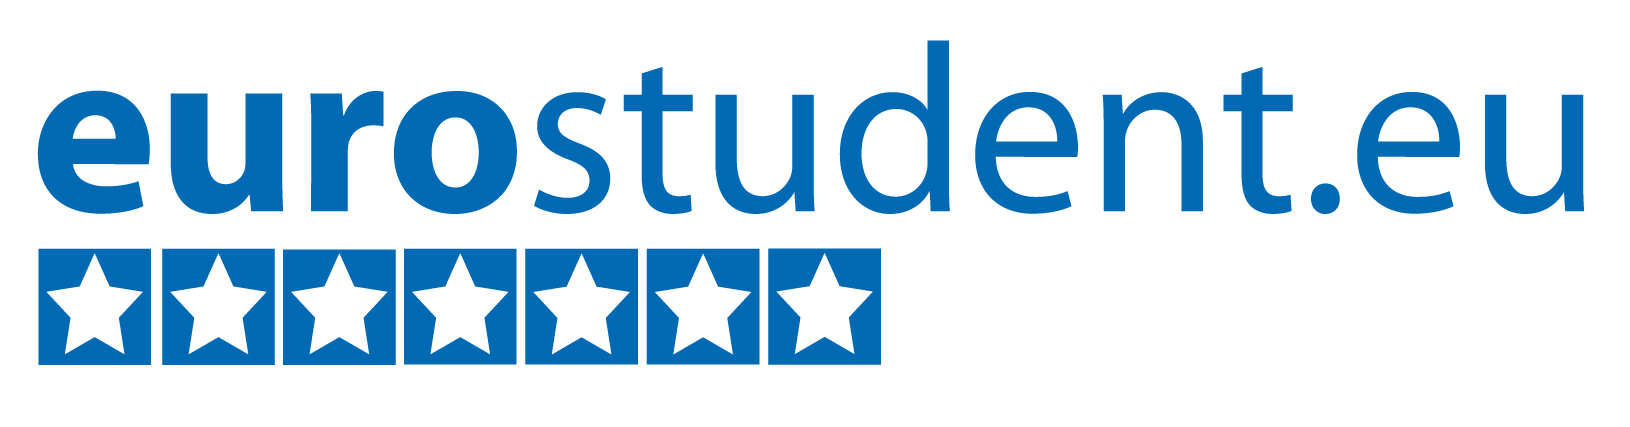 Eurostudent logo